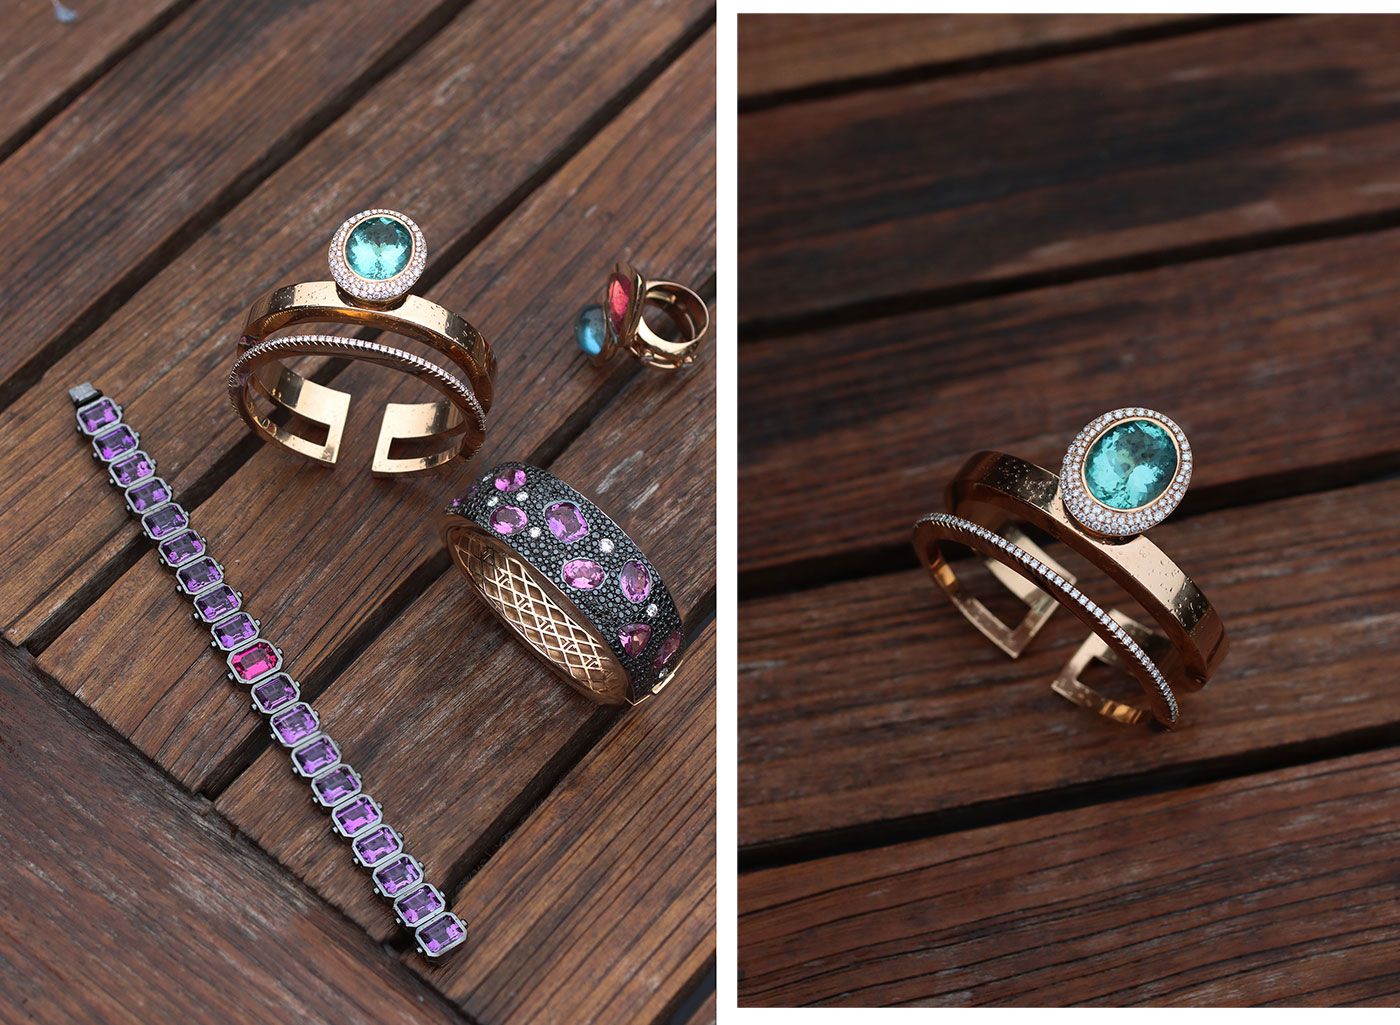 Colourful jewellery designs by Jochen Leën